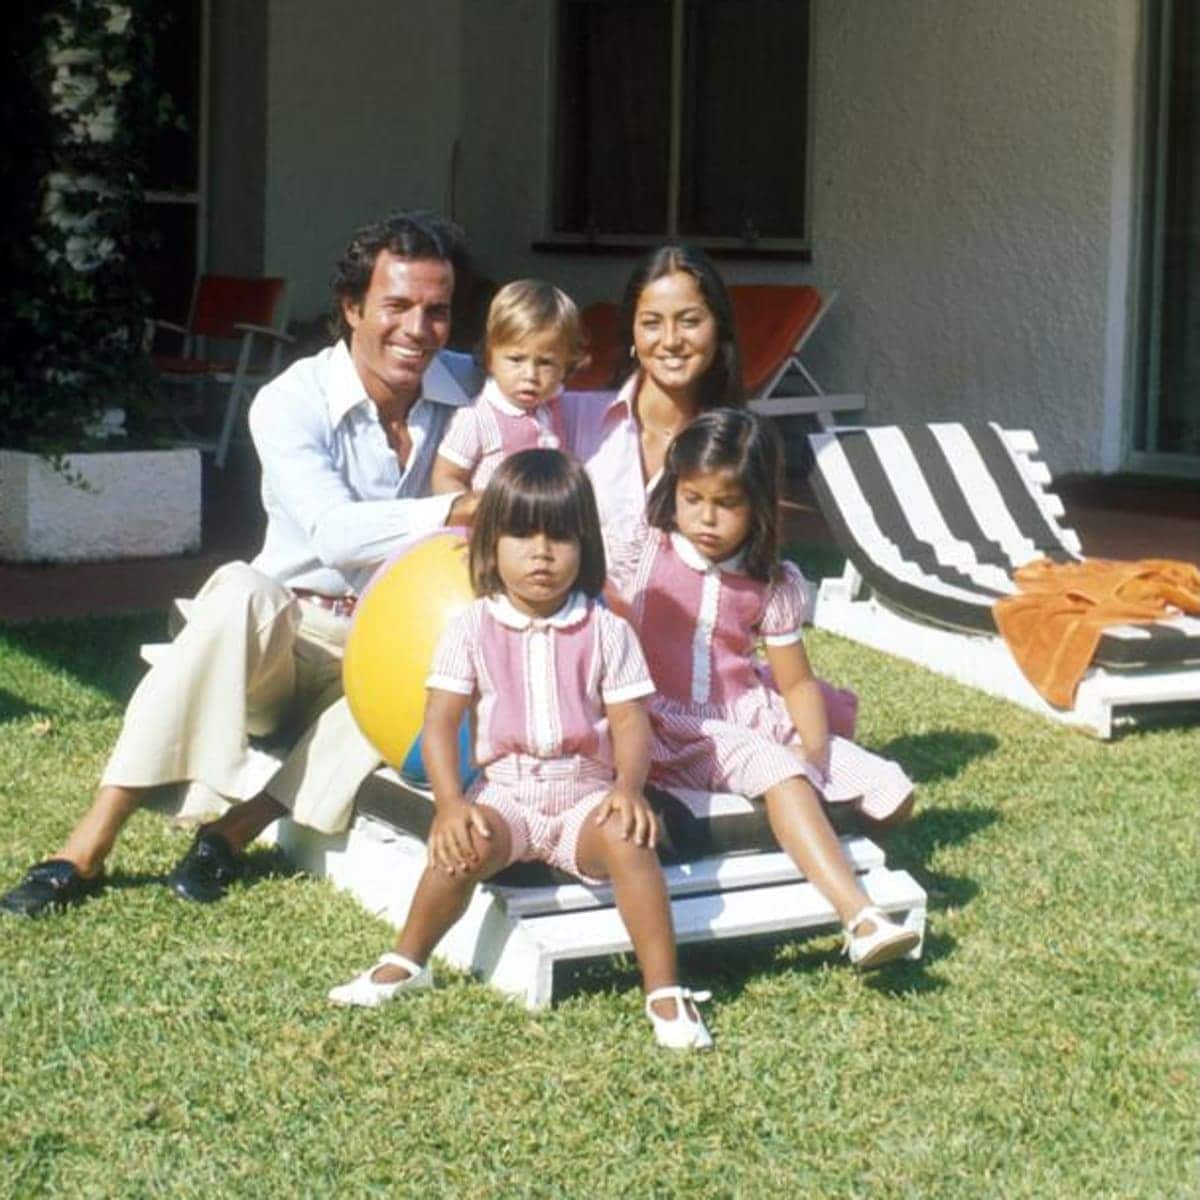 Julio Iglesias, Isabel Preysler, and their children Chabeli, Julio, and Enrique